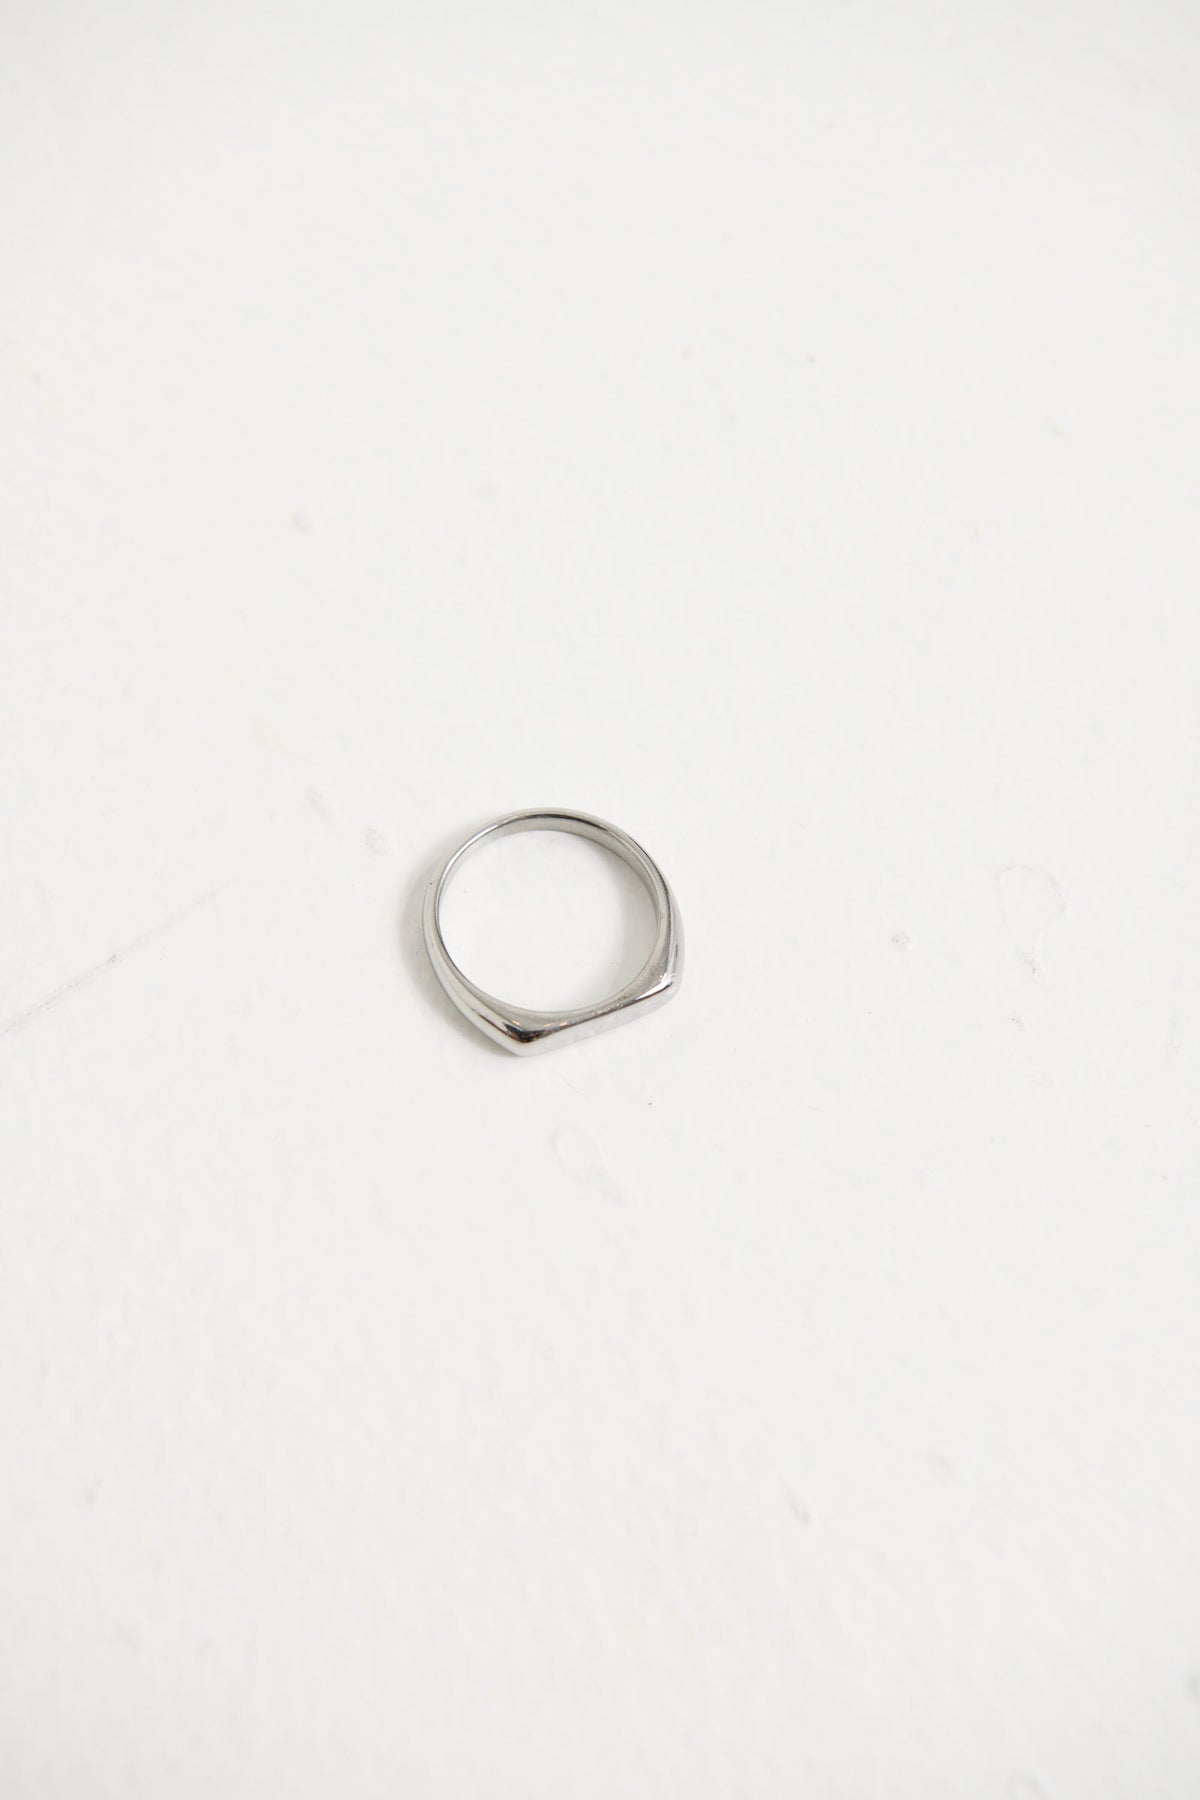 NTH Slim Signet Ring Silver